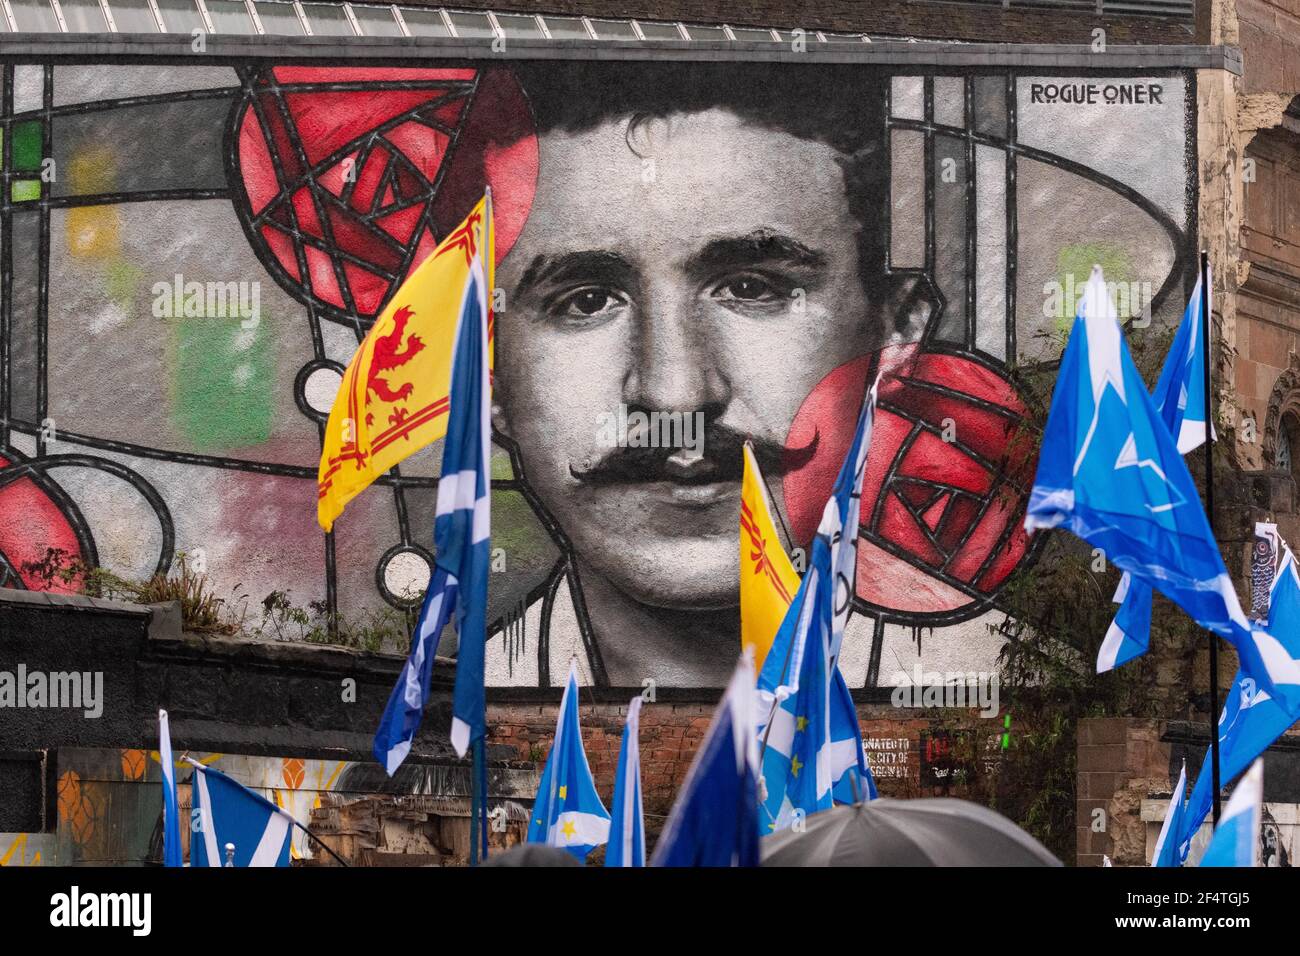 Les partisans écossais de l'indépendance défilent devant la fresque Rennie Mackintosh à Glasgow, Écosse, Royaume-Uni - janvier 2020 Banque D'Images